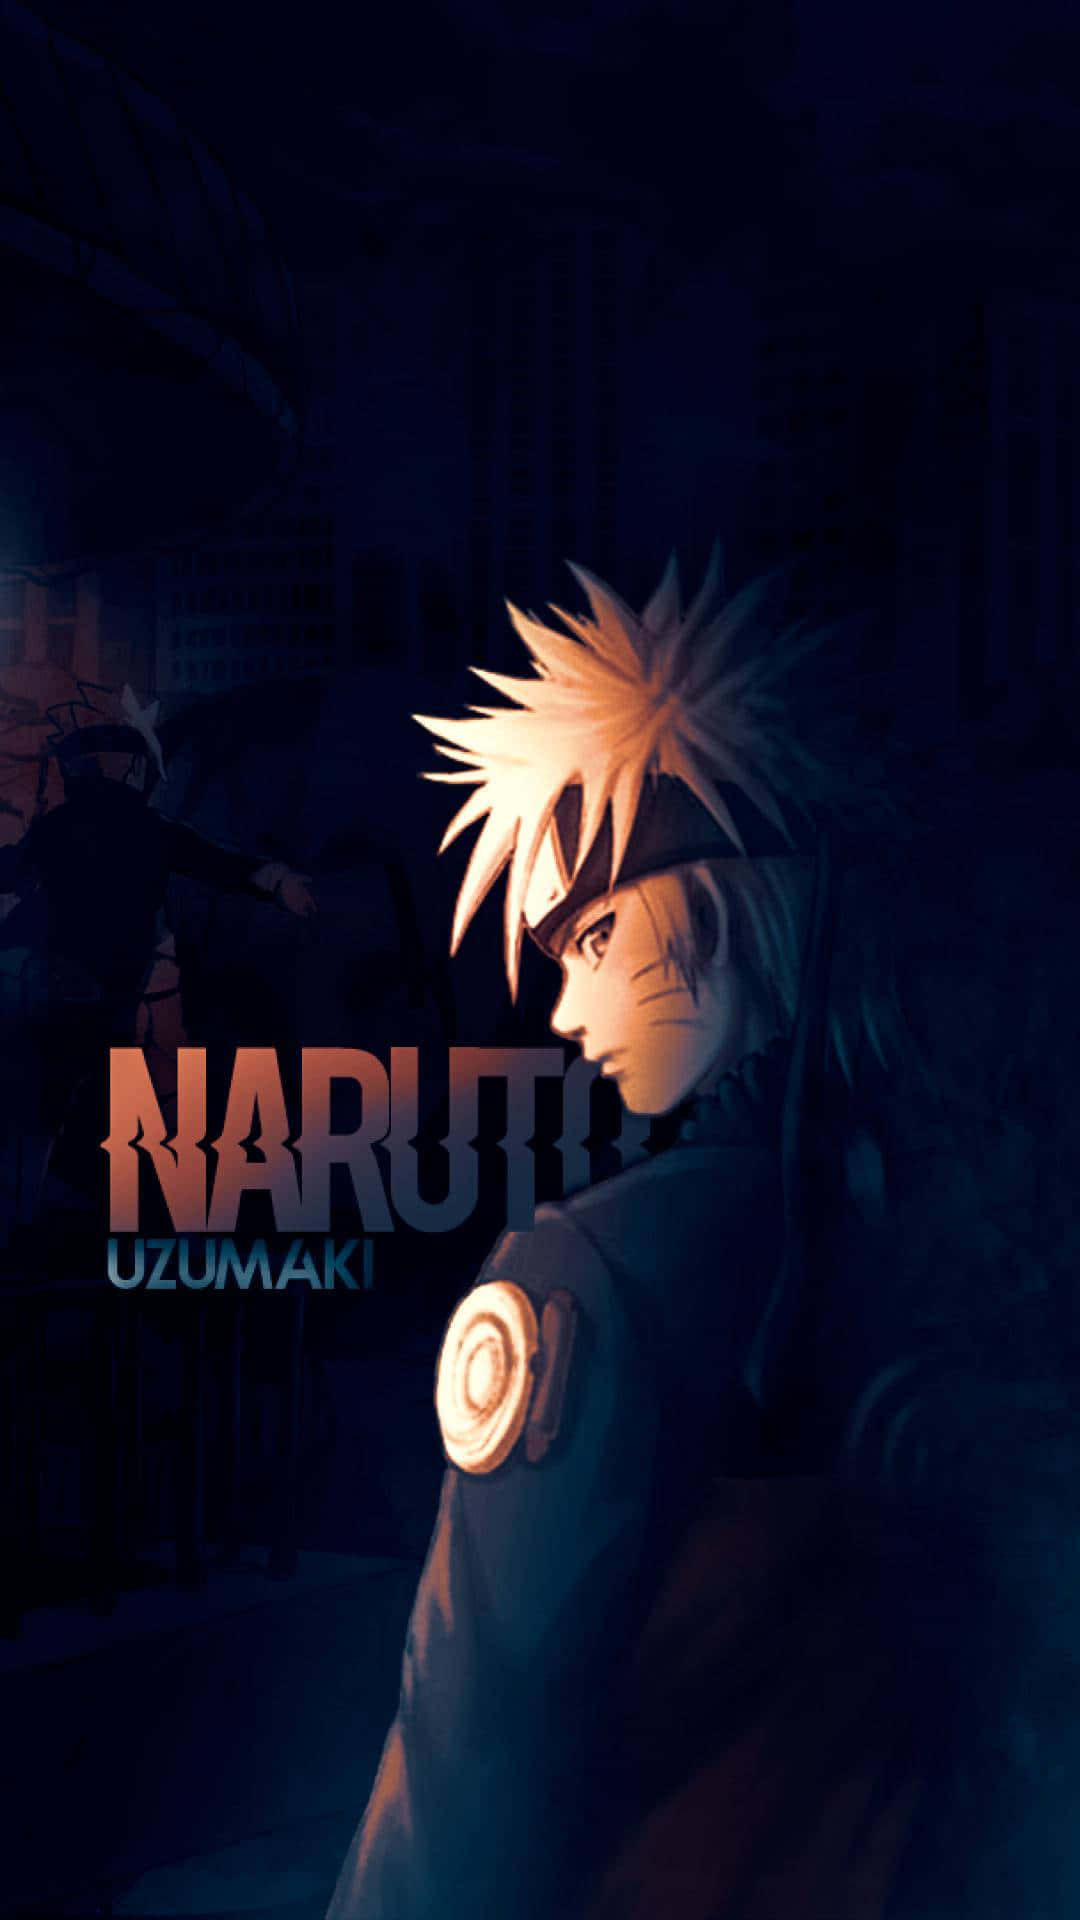 En ensom Naruto, der omfavner sin sorg i ensomhed. Wallpaper